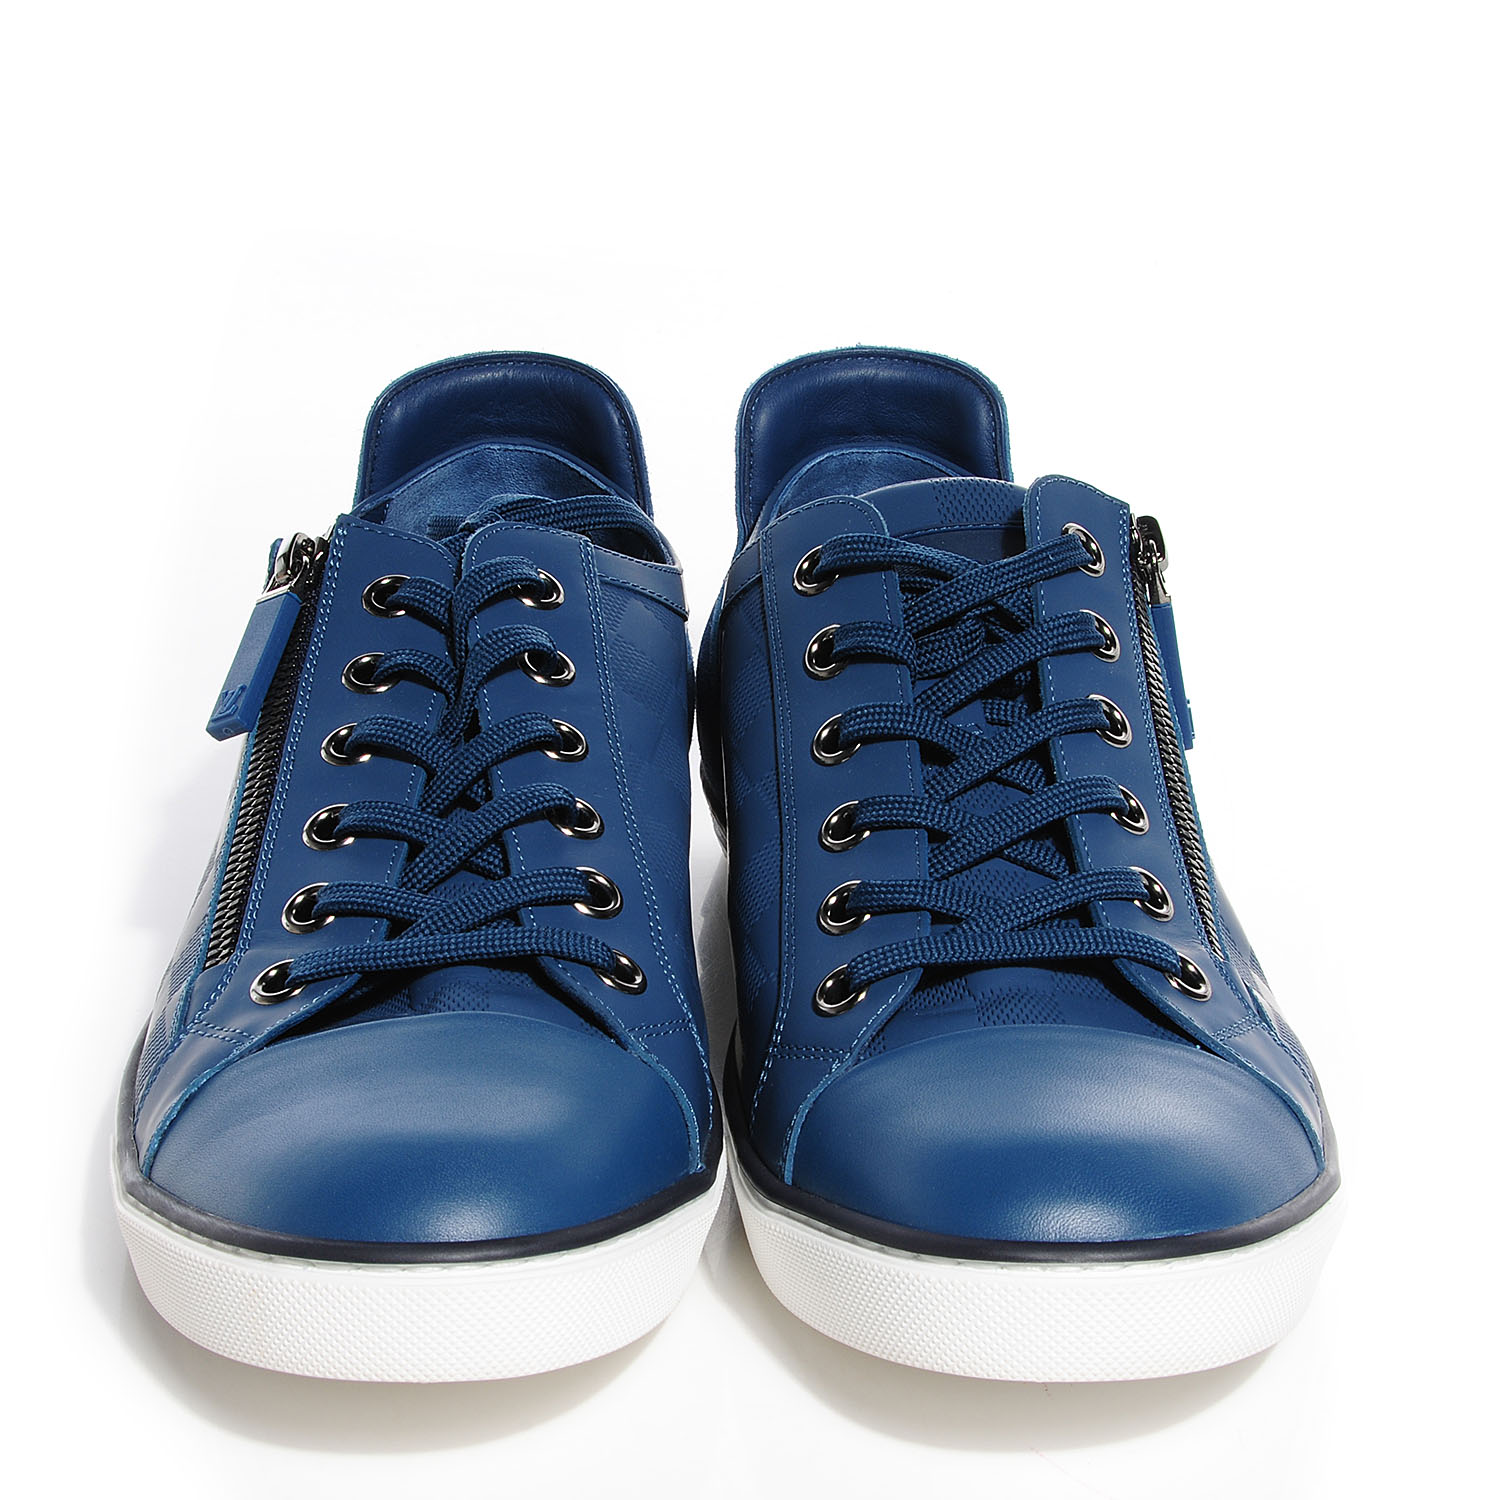 LOUIS VUITTON Mens Damier Challenge Zip Up Sneakers 9 Bleu 89740